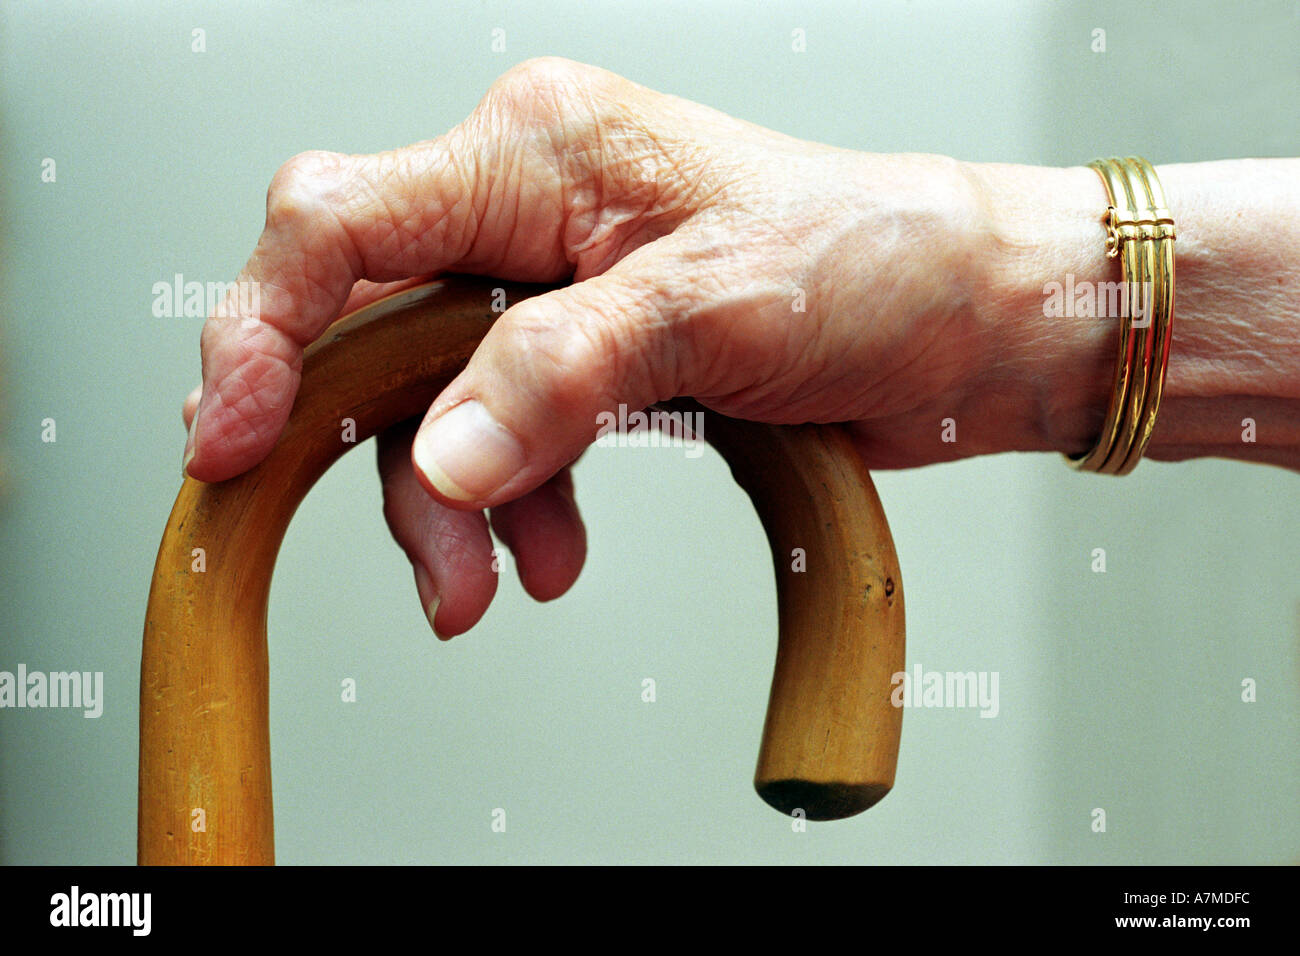 La main de femme arthritique sur son bâton de marche, de l'arthrite Banque D'Images